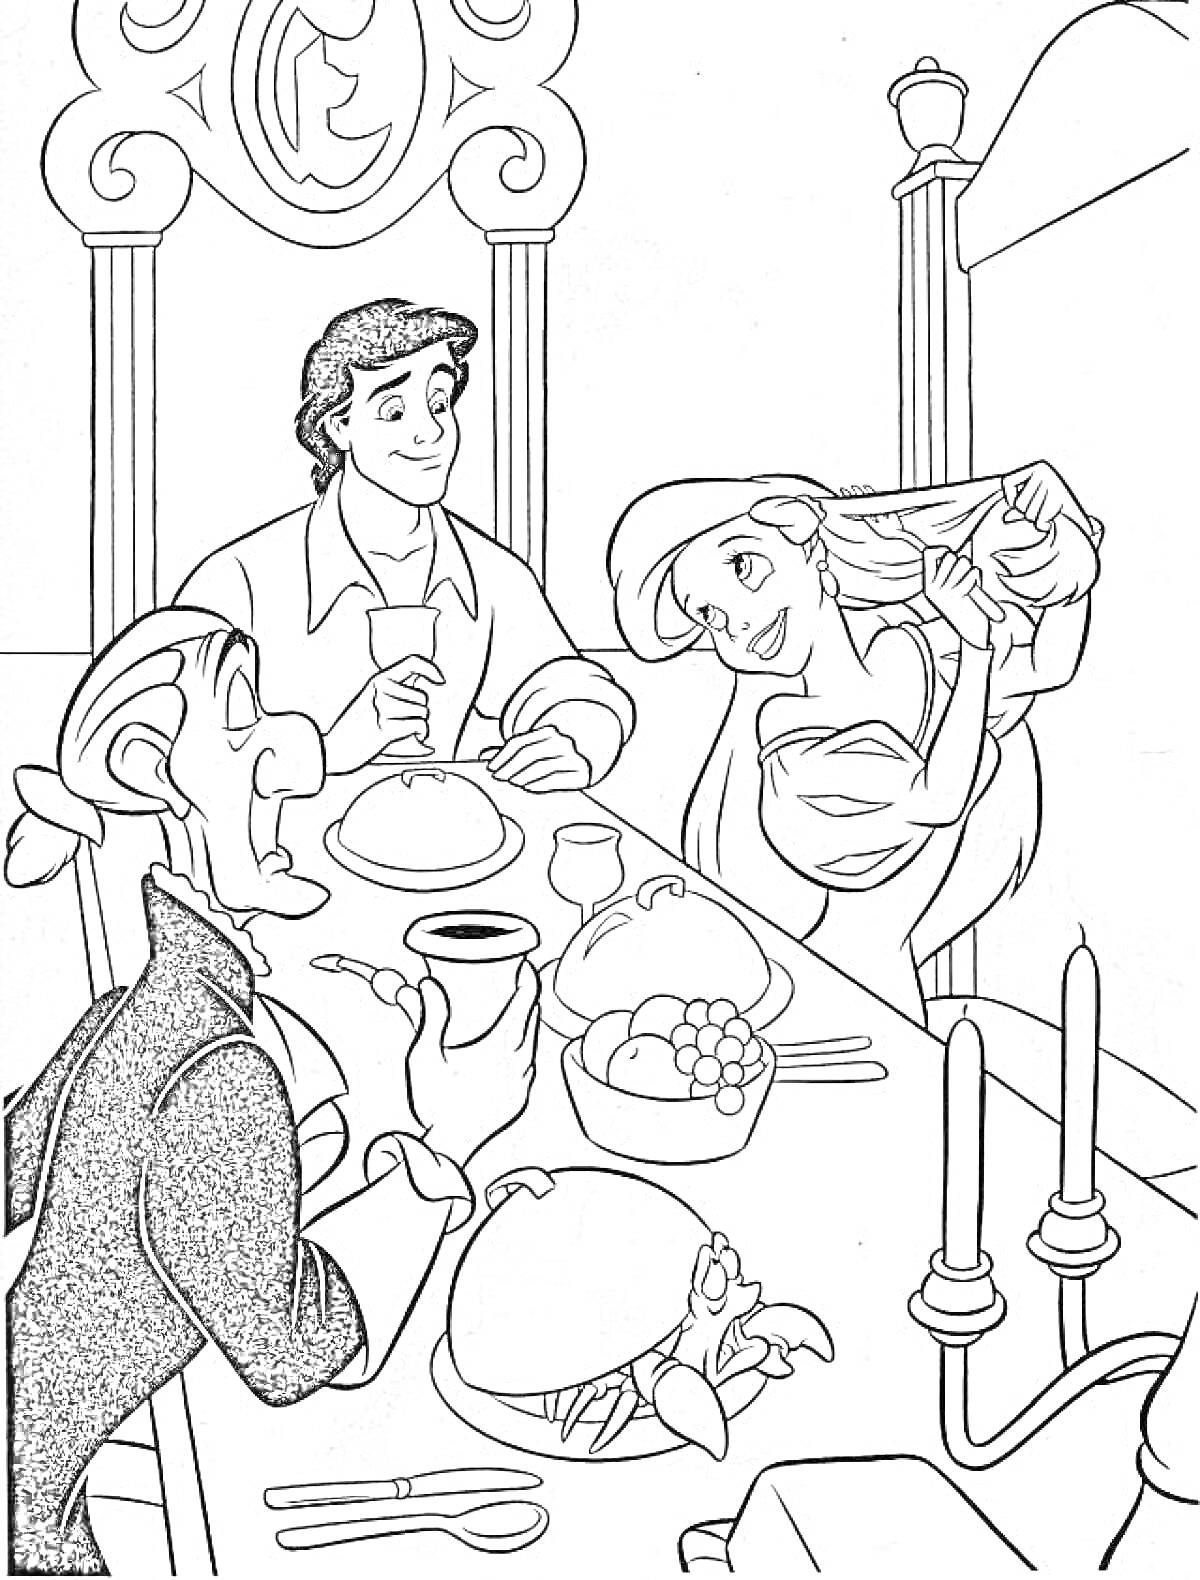 РаскраскаАриэль и принц Эрик за обедом с придворным, блюда на столе, свечи